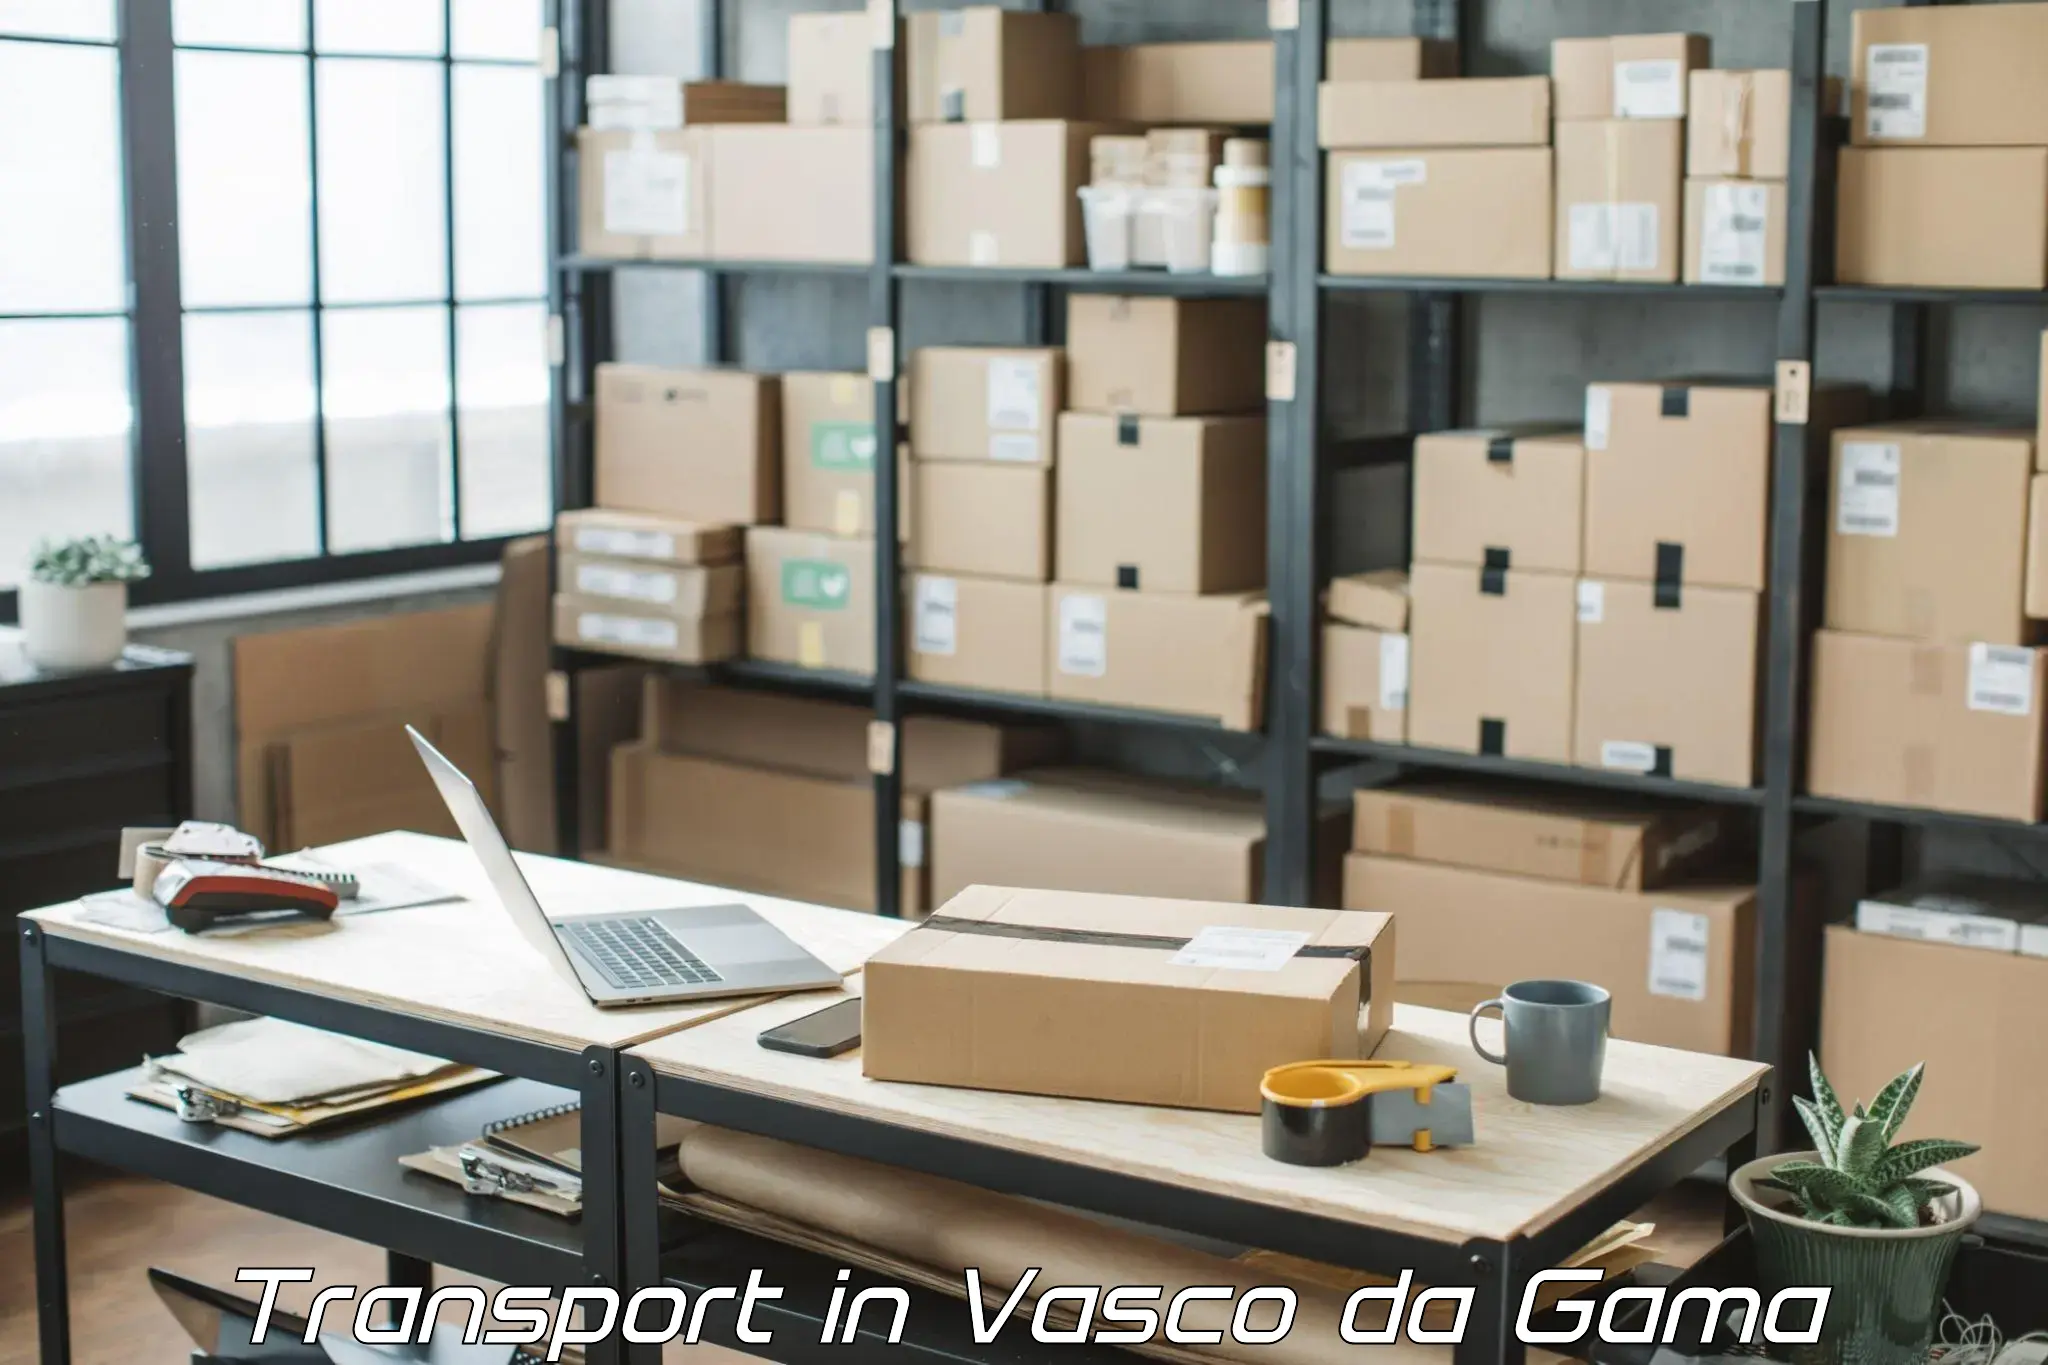 Transport shared services in Vasco da Gama